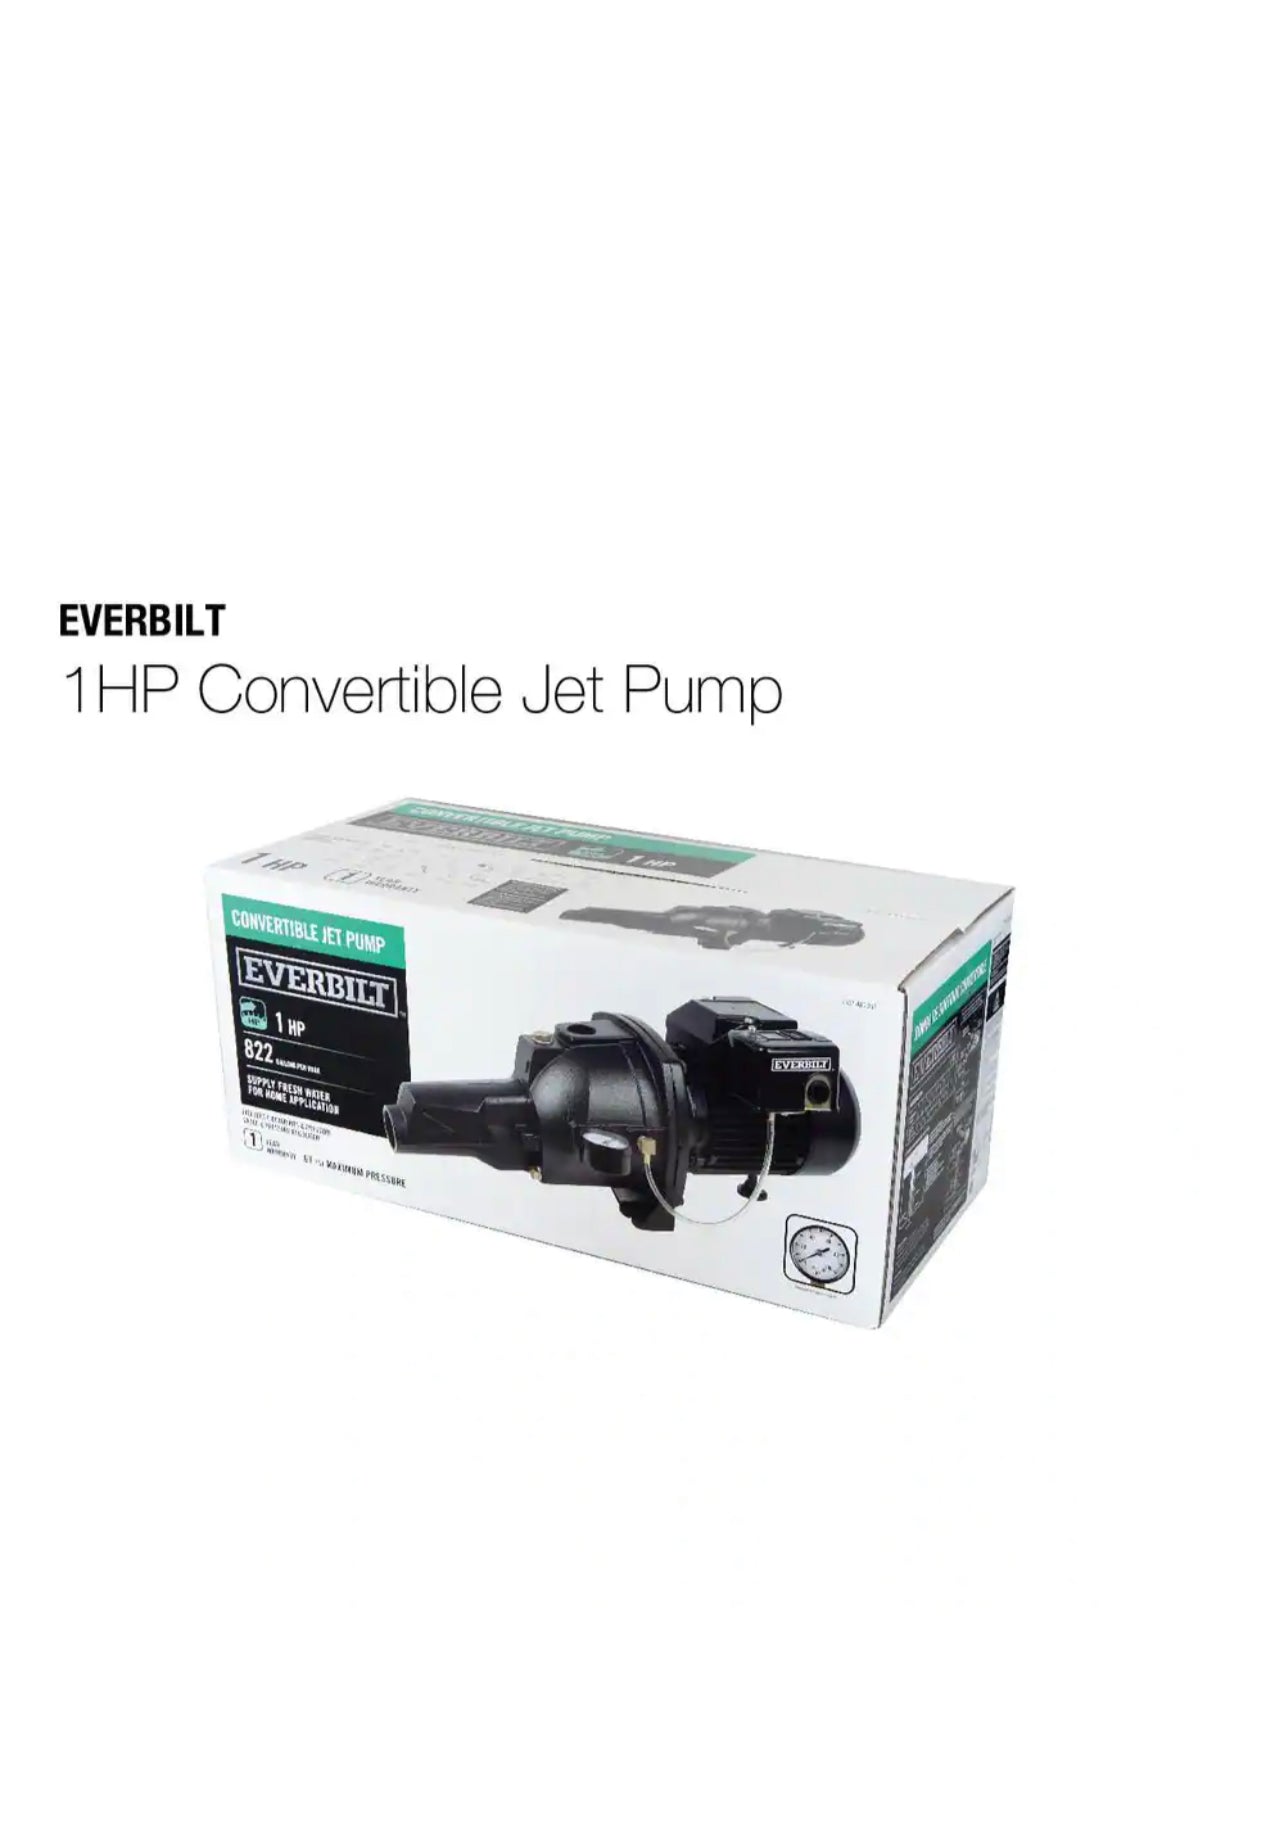 Everbilt 1 HP Convertible Jet Pump Damaged Box